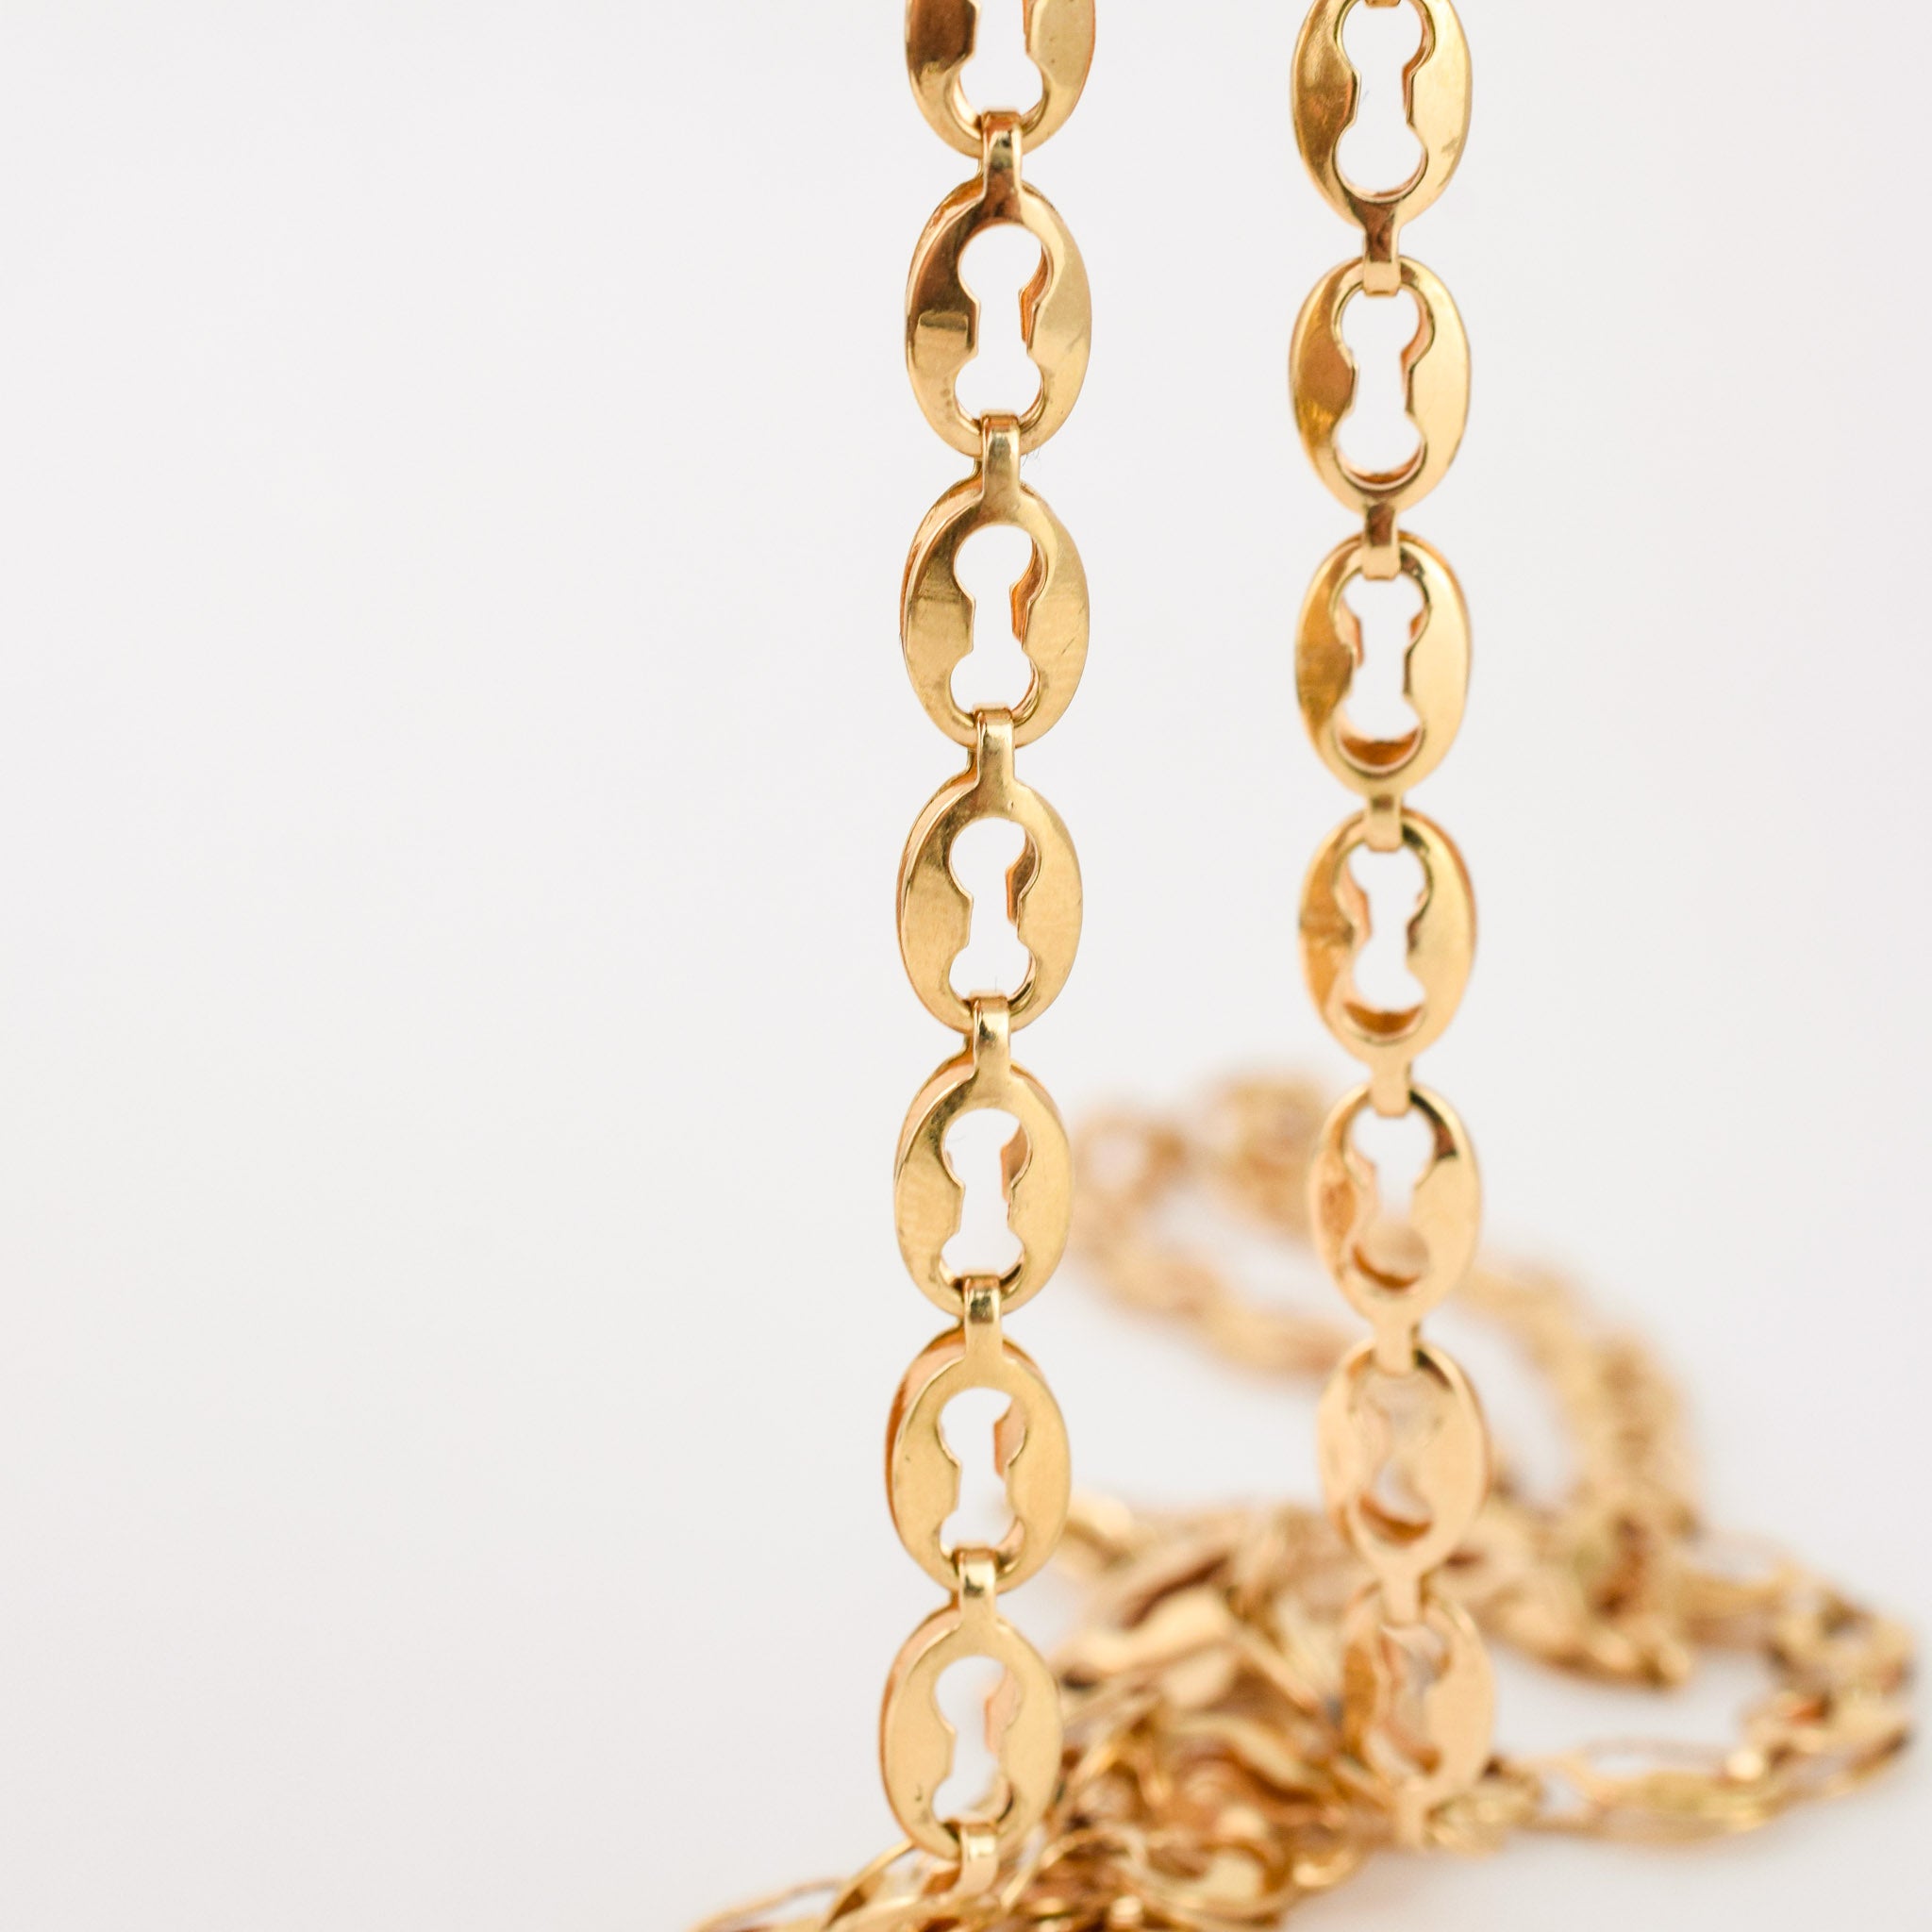 vintage gold 18k mariner link necklace 